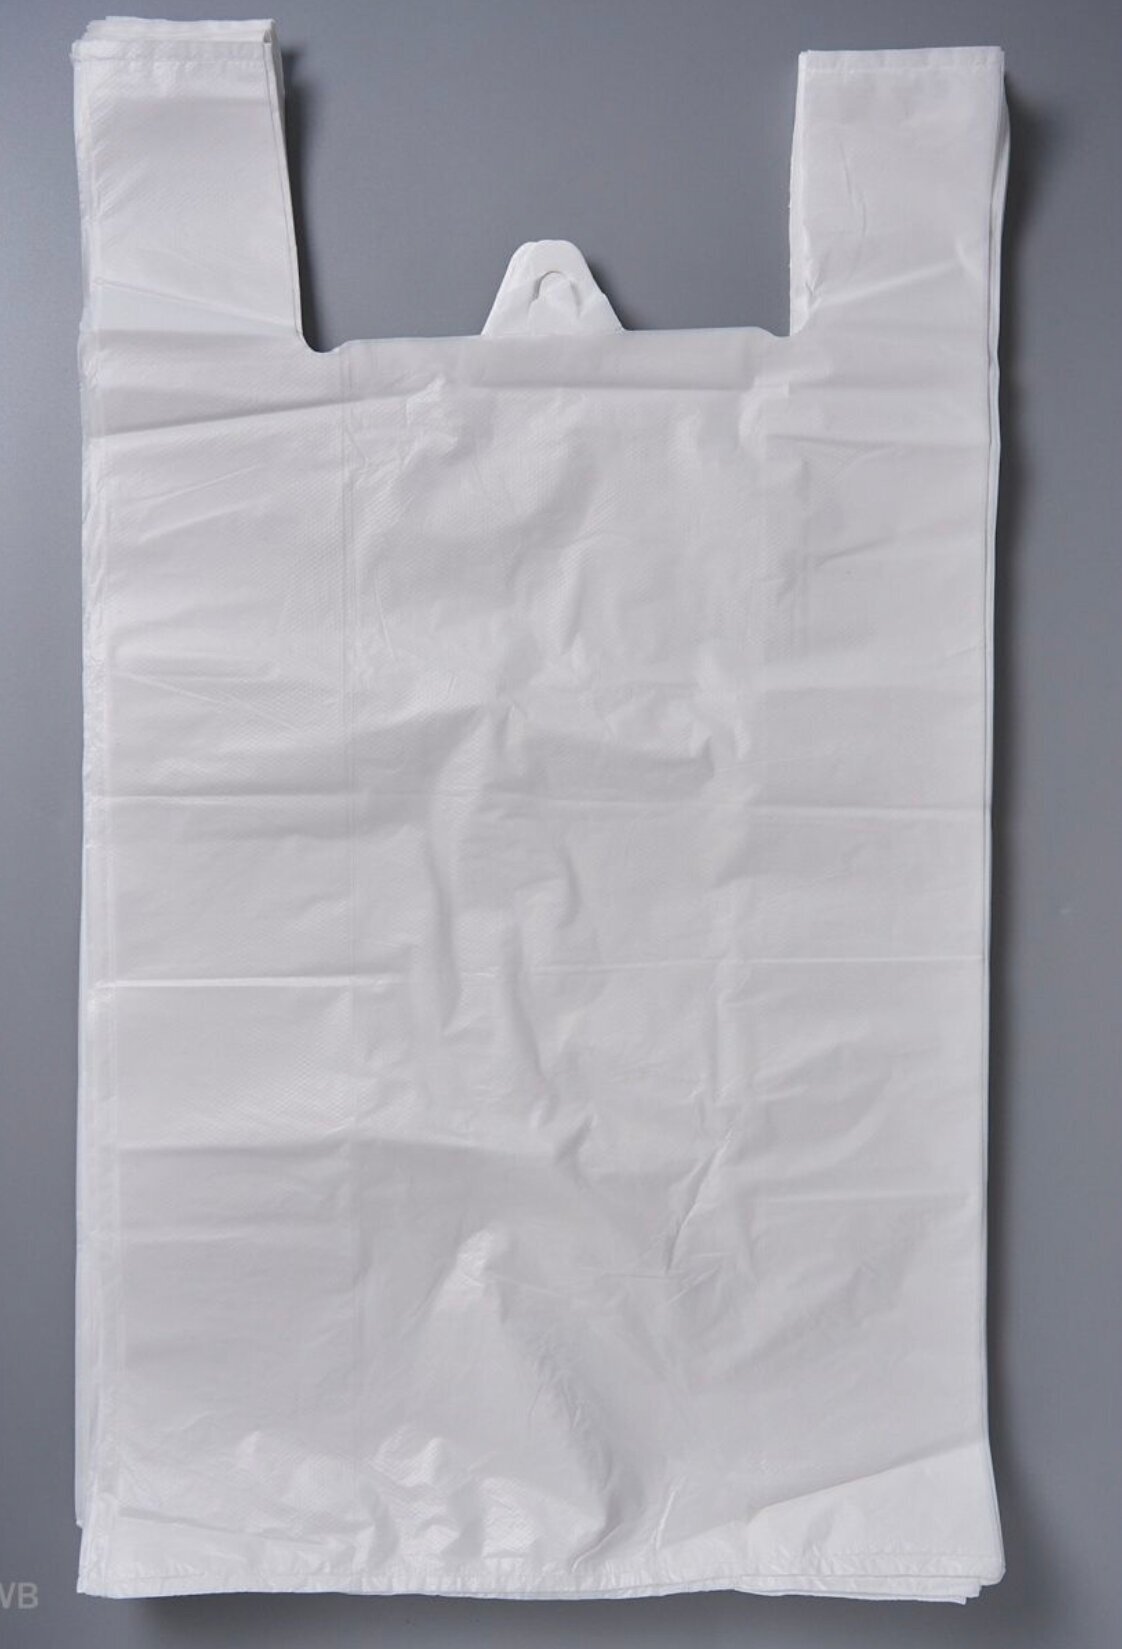 АМК-Пакет, Пакет-майка для ПВЗ белый большой полиэтиленовый, 43*60 17 мкм 500 штук - фотография № 4